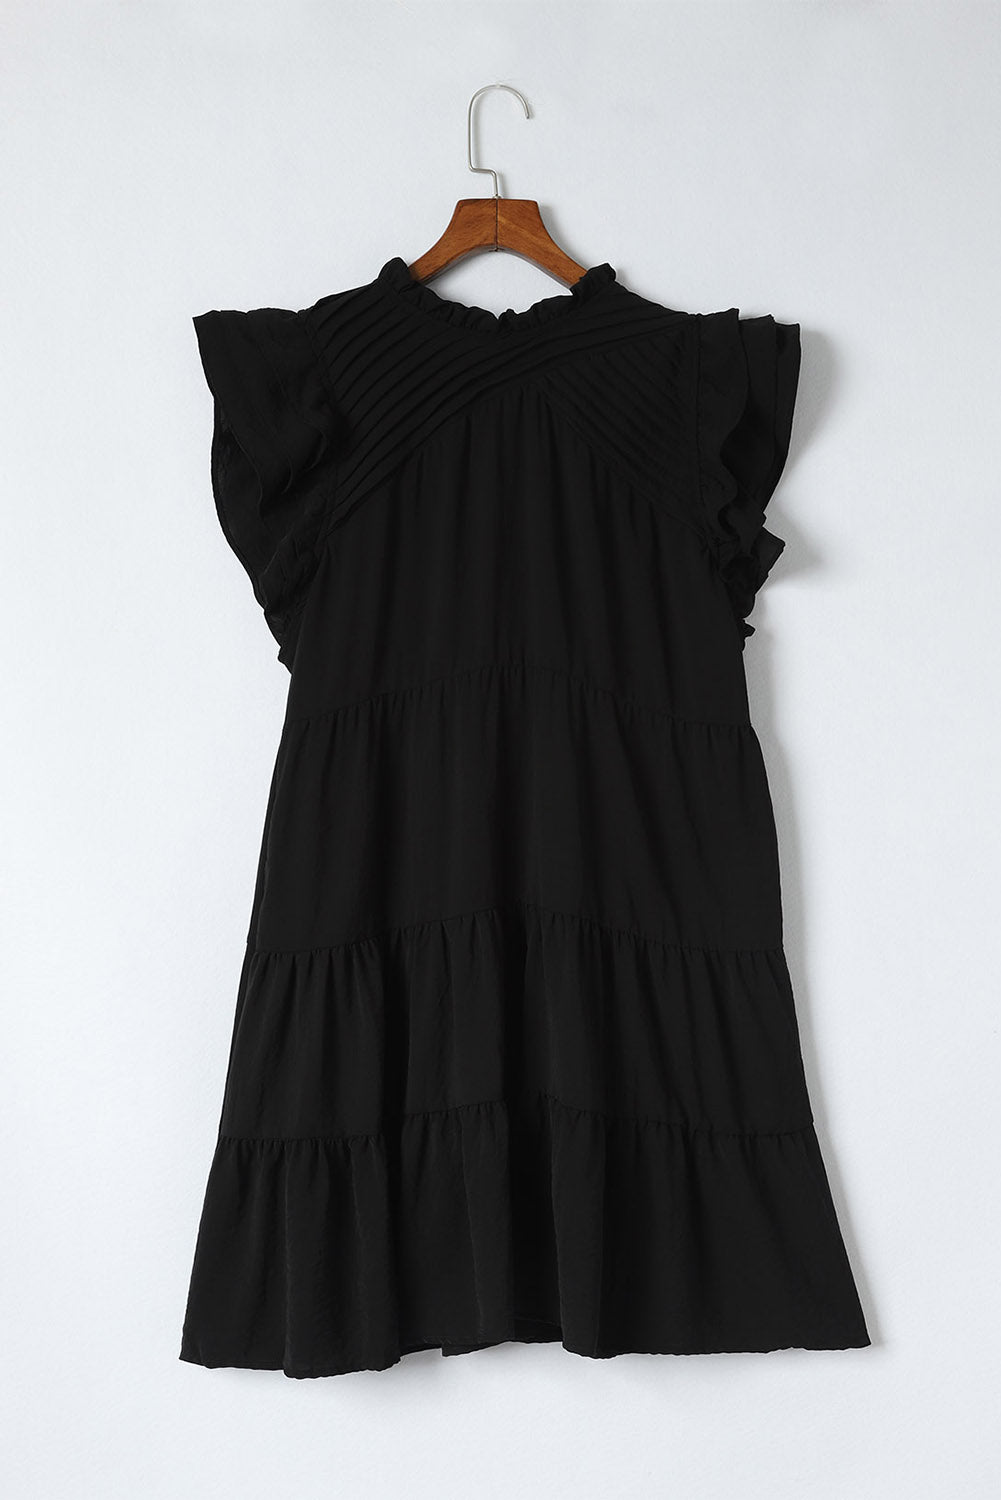 Schwarzes, plissiertes, gestuftes Minikleid mit Rüschen und Flatterärmeln